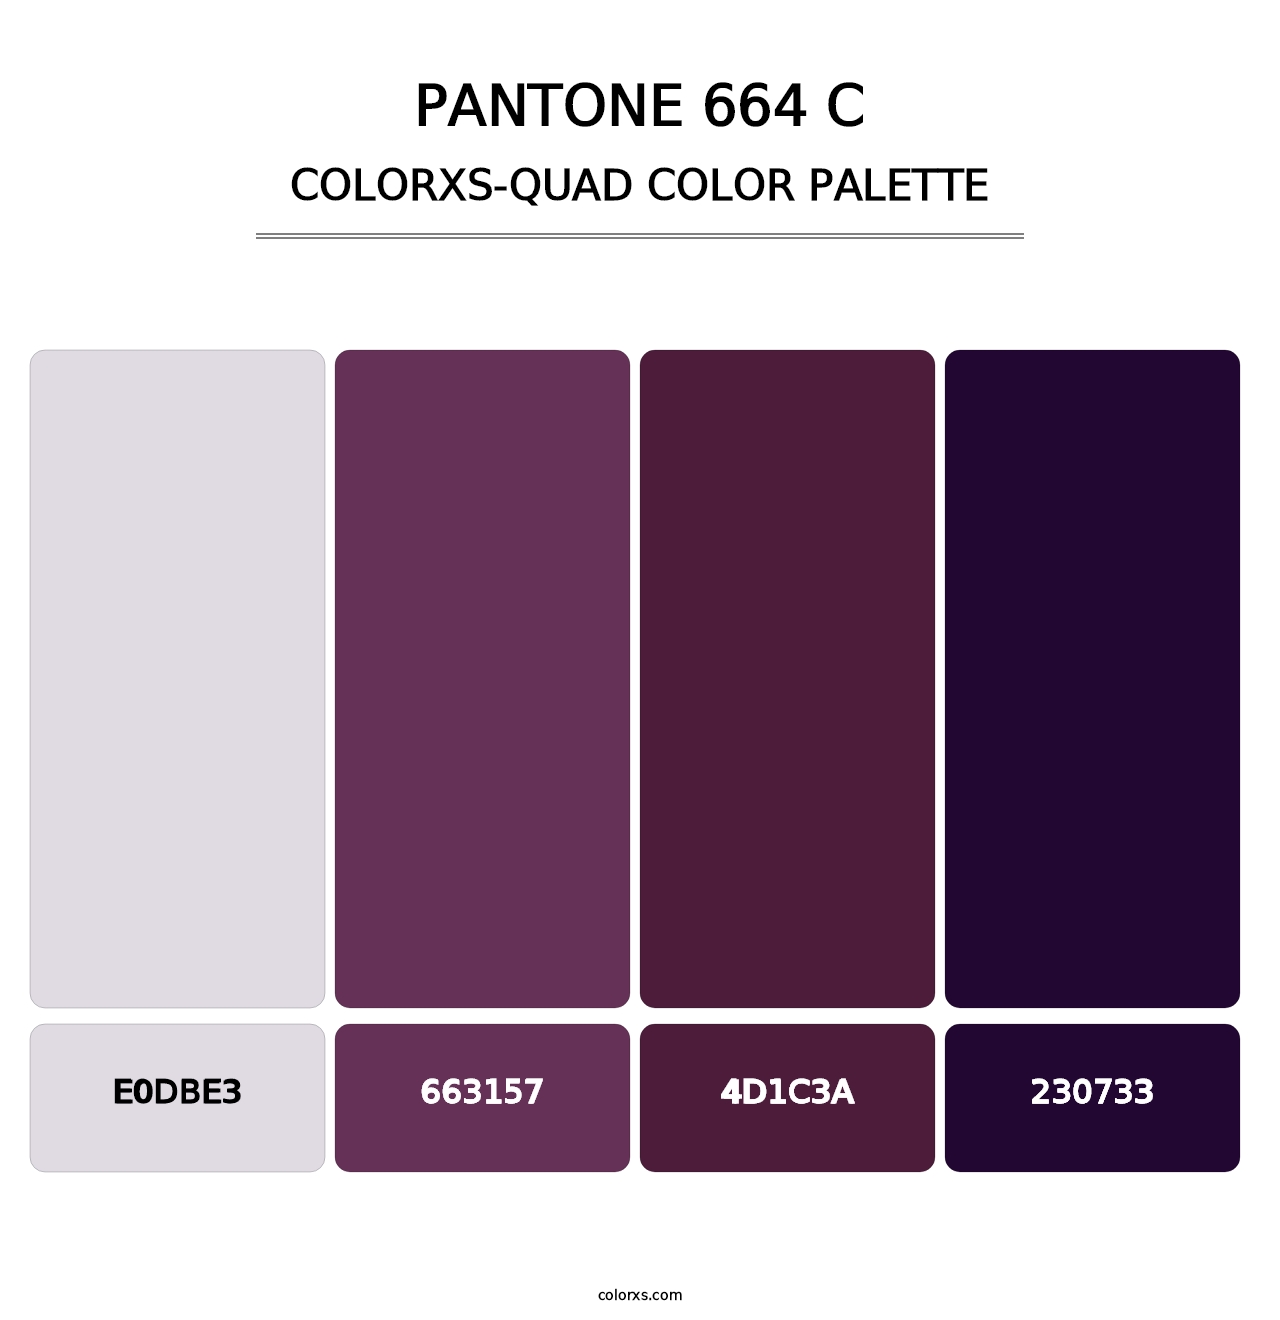 PANTONE 664 C - Colorxs Quad Palette